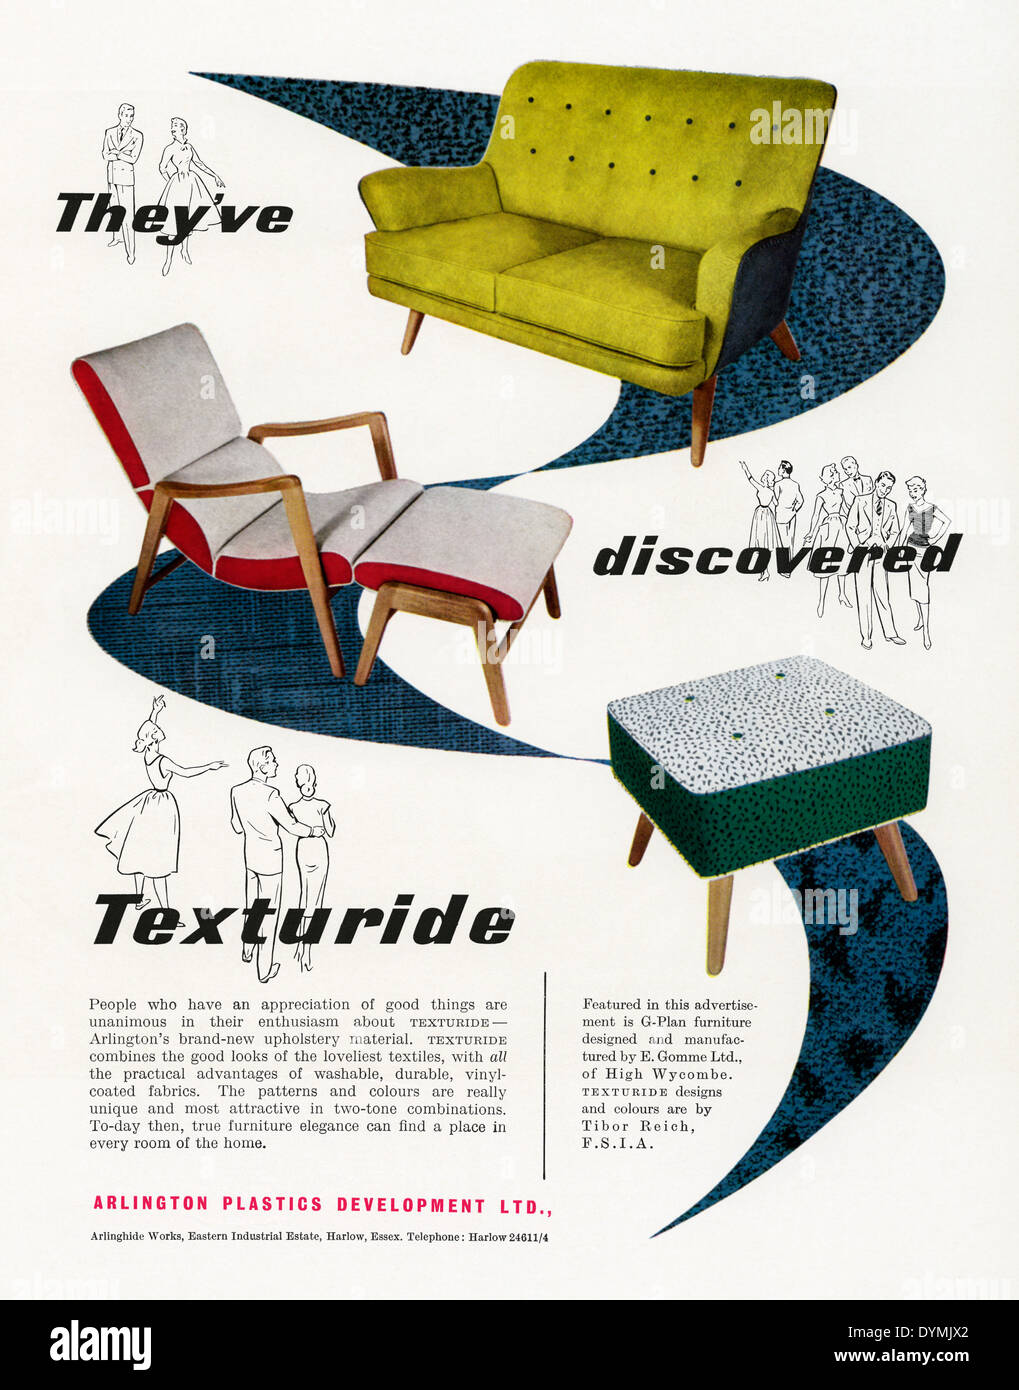 Ancienne publicité pour G-Plan, Texturide-couverts, simili cuir chaises, canapés et tabourets. L'annonce a paru dans un magazine en 1956 Banque D'Images